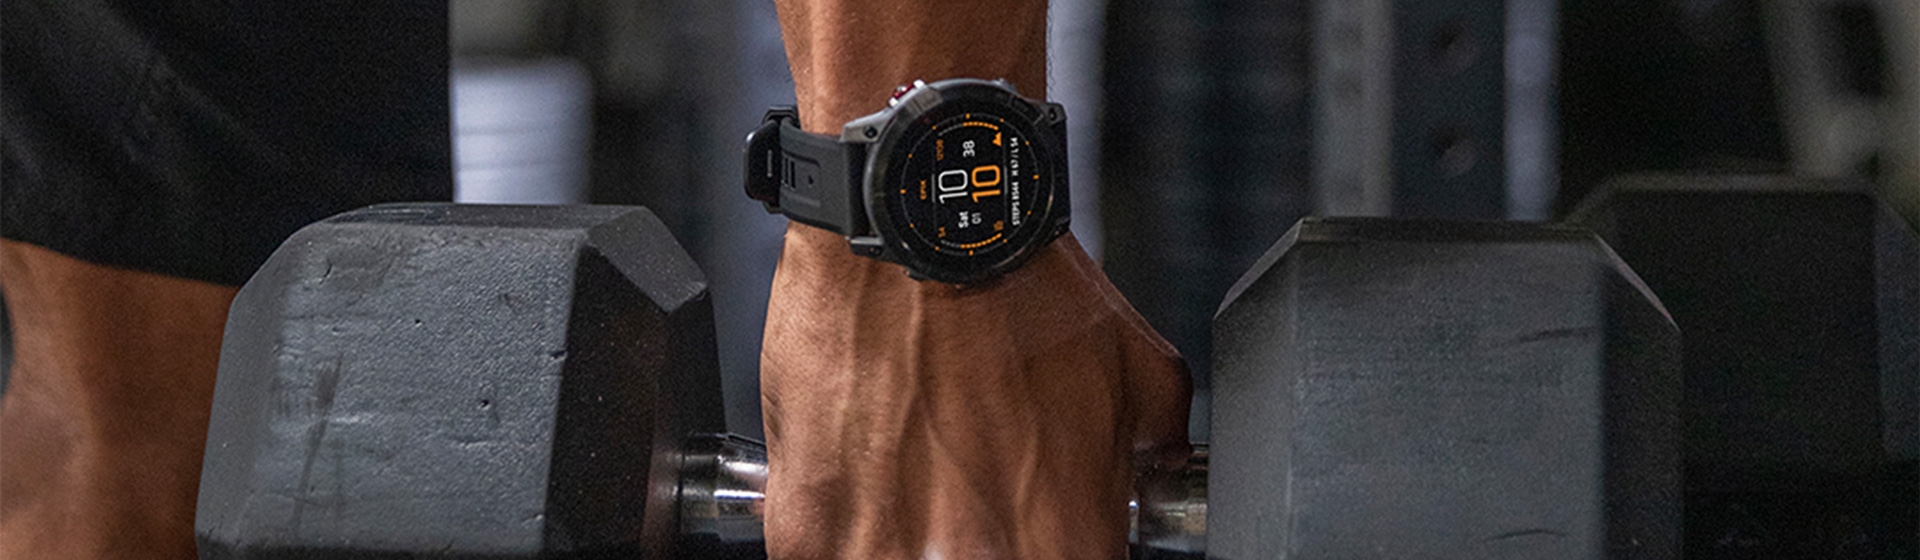 Header-Es-lebe-der-Sport-Smartwatch-1920x560